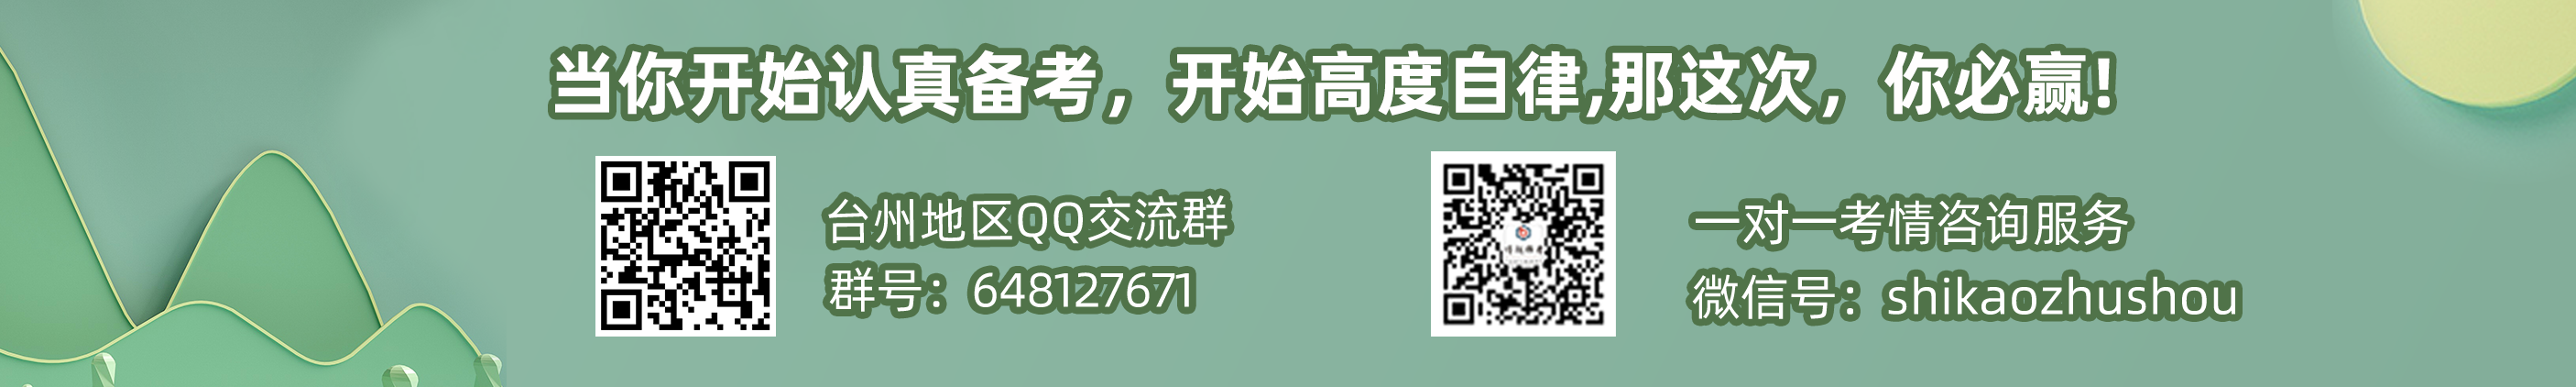 网页小banner台州.png